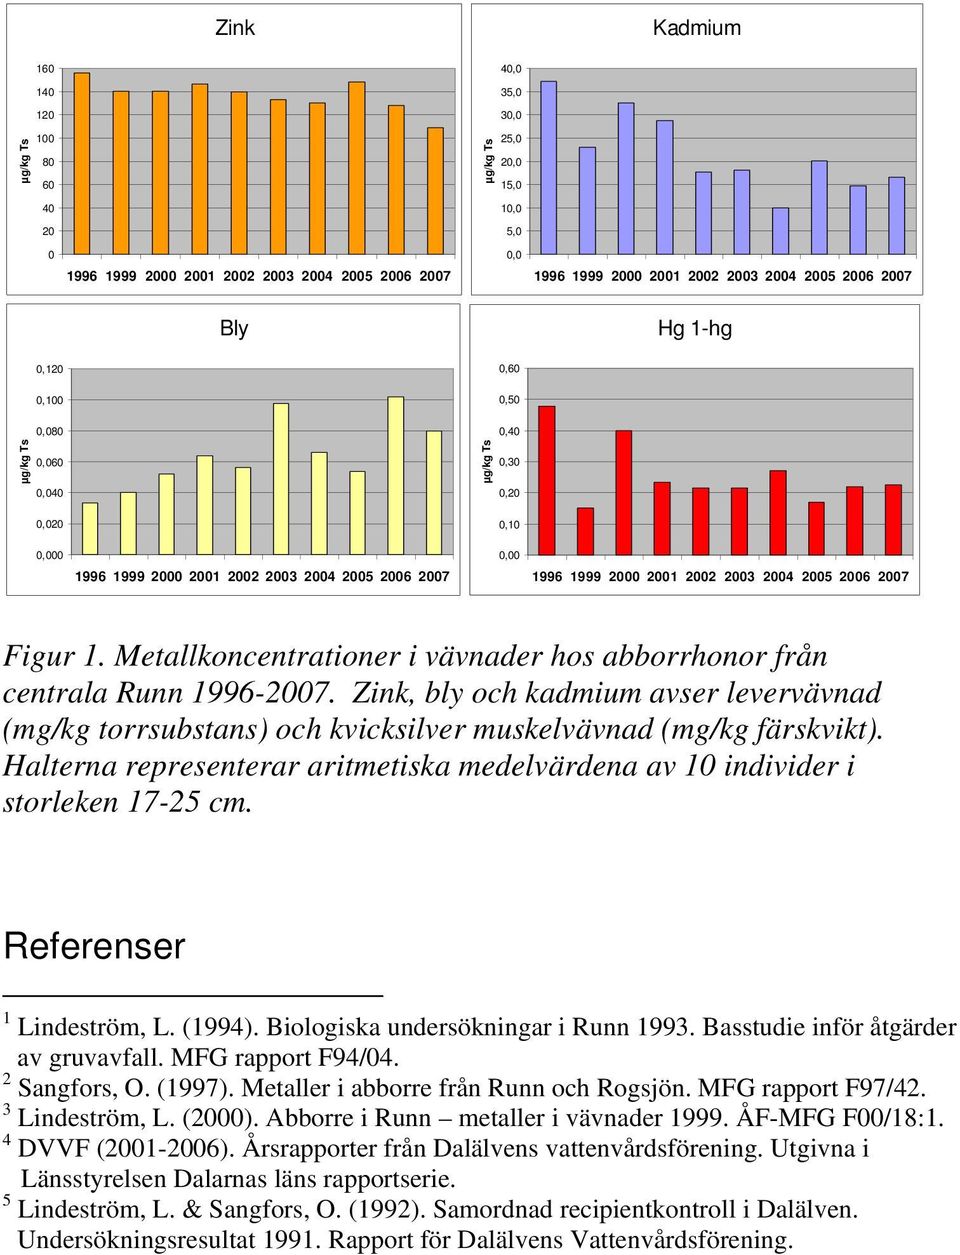 Halterna representerar aritmetiska medelvärdena av individer i storleken 17-25 cm. Referenser 1 Lindeström, L. (1994). Biologiska undersökningar i Runn 1993. Basstudie inför åtgärder av gruvavfall.